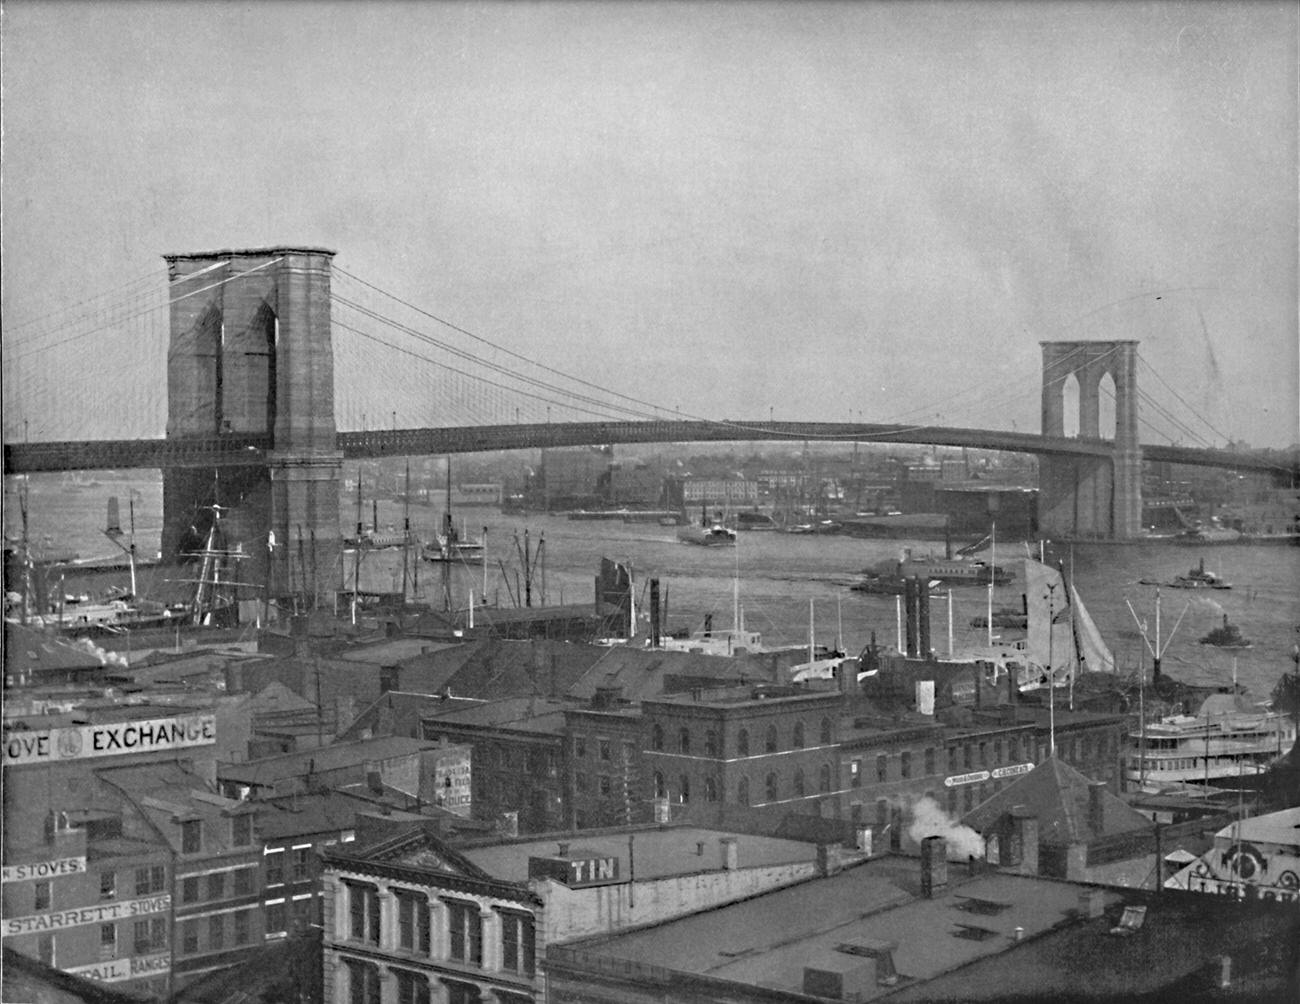 Brooklyn Bridge Design By John Augustus Roebling, 1901